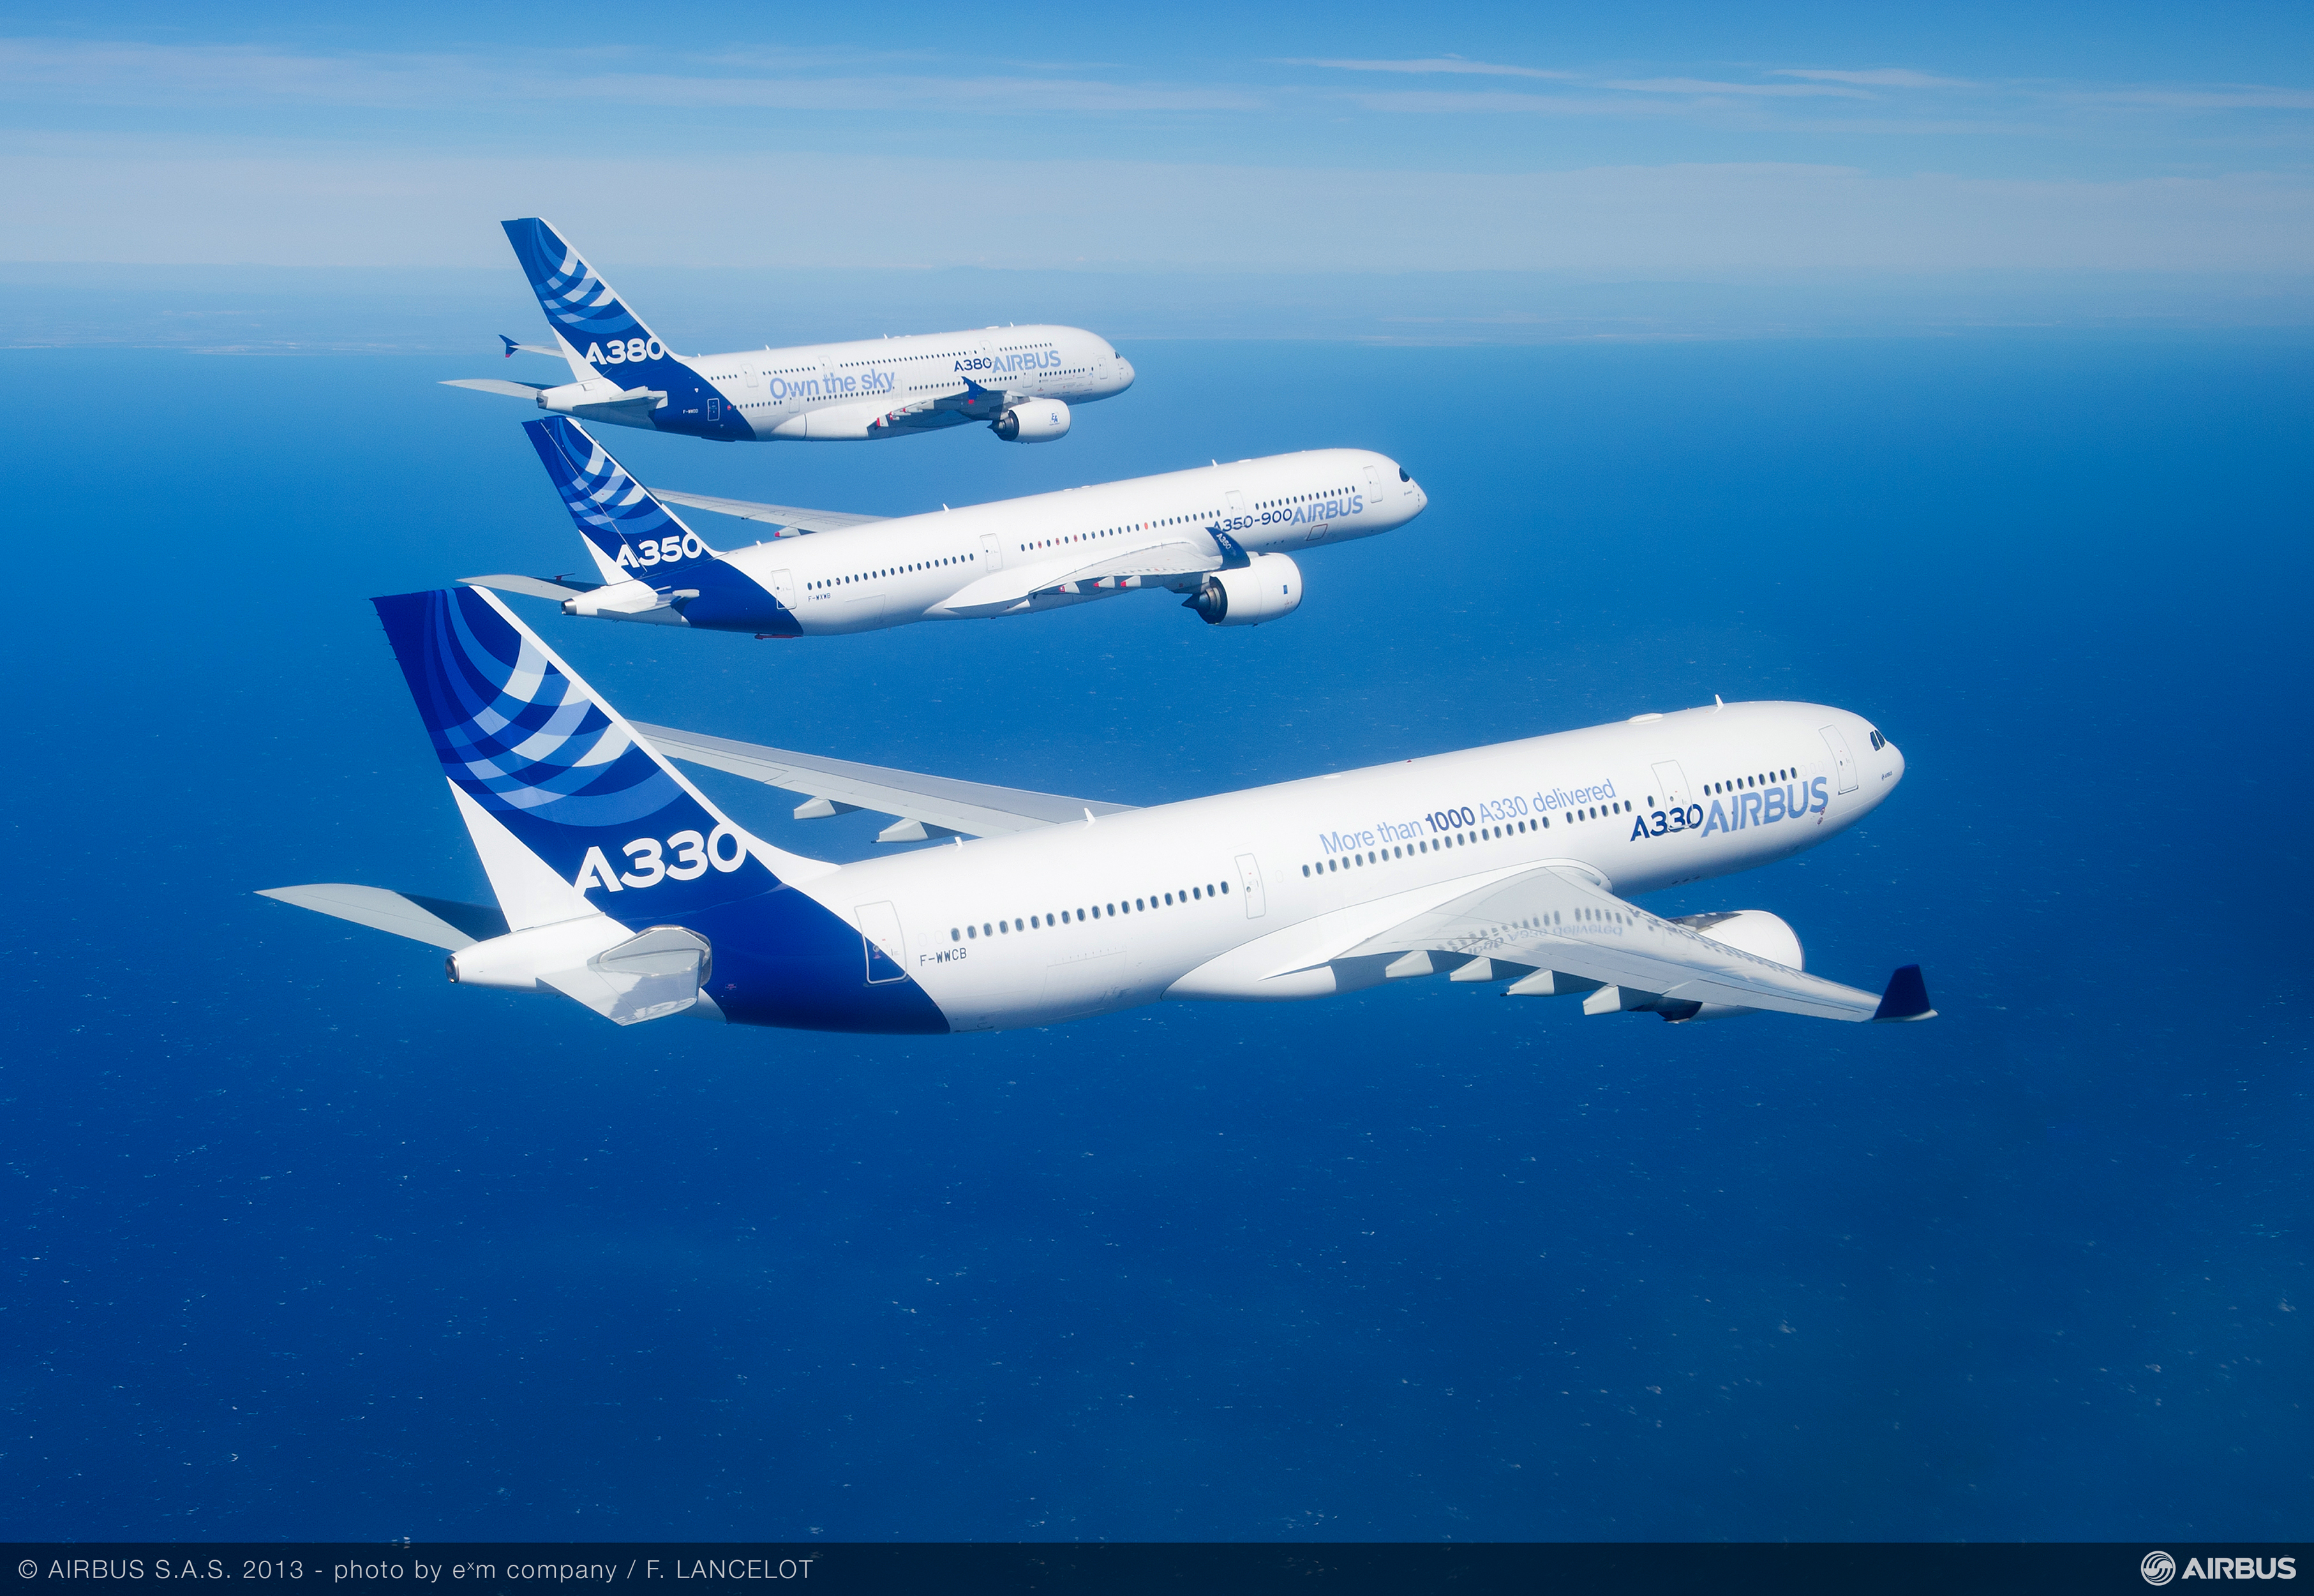 Airbus_Family_flight_A330_A350_XWB_A380_air_to_air